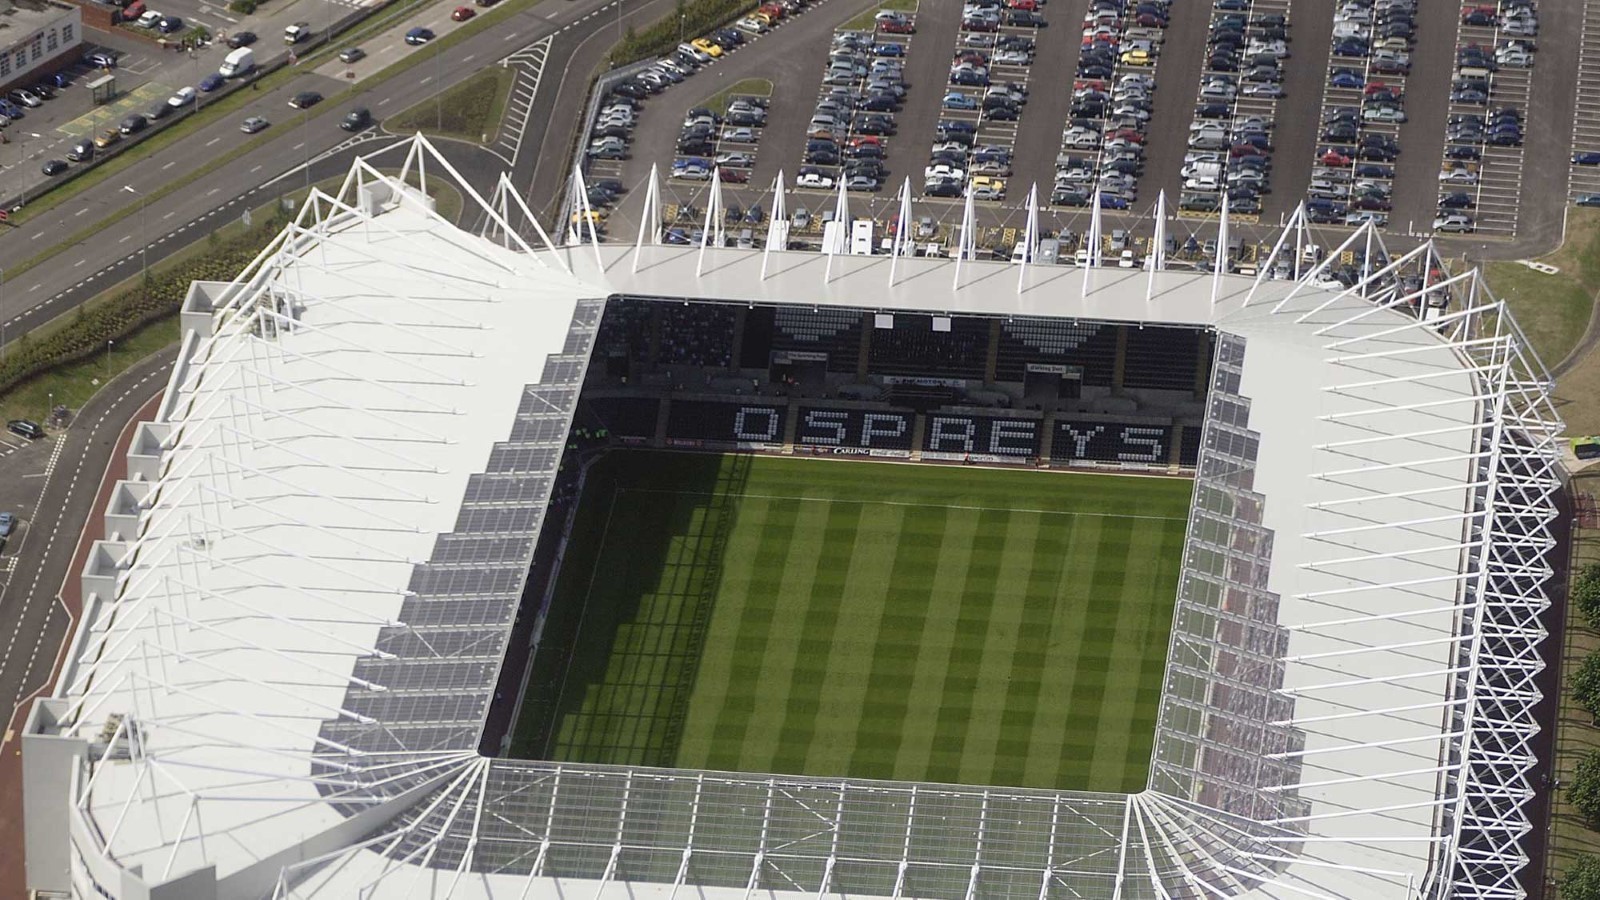 Aerial view of the Swansea.com Stadium